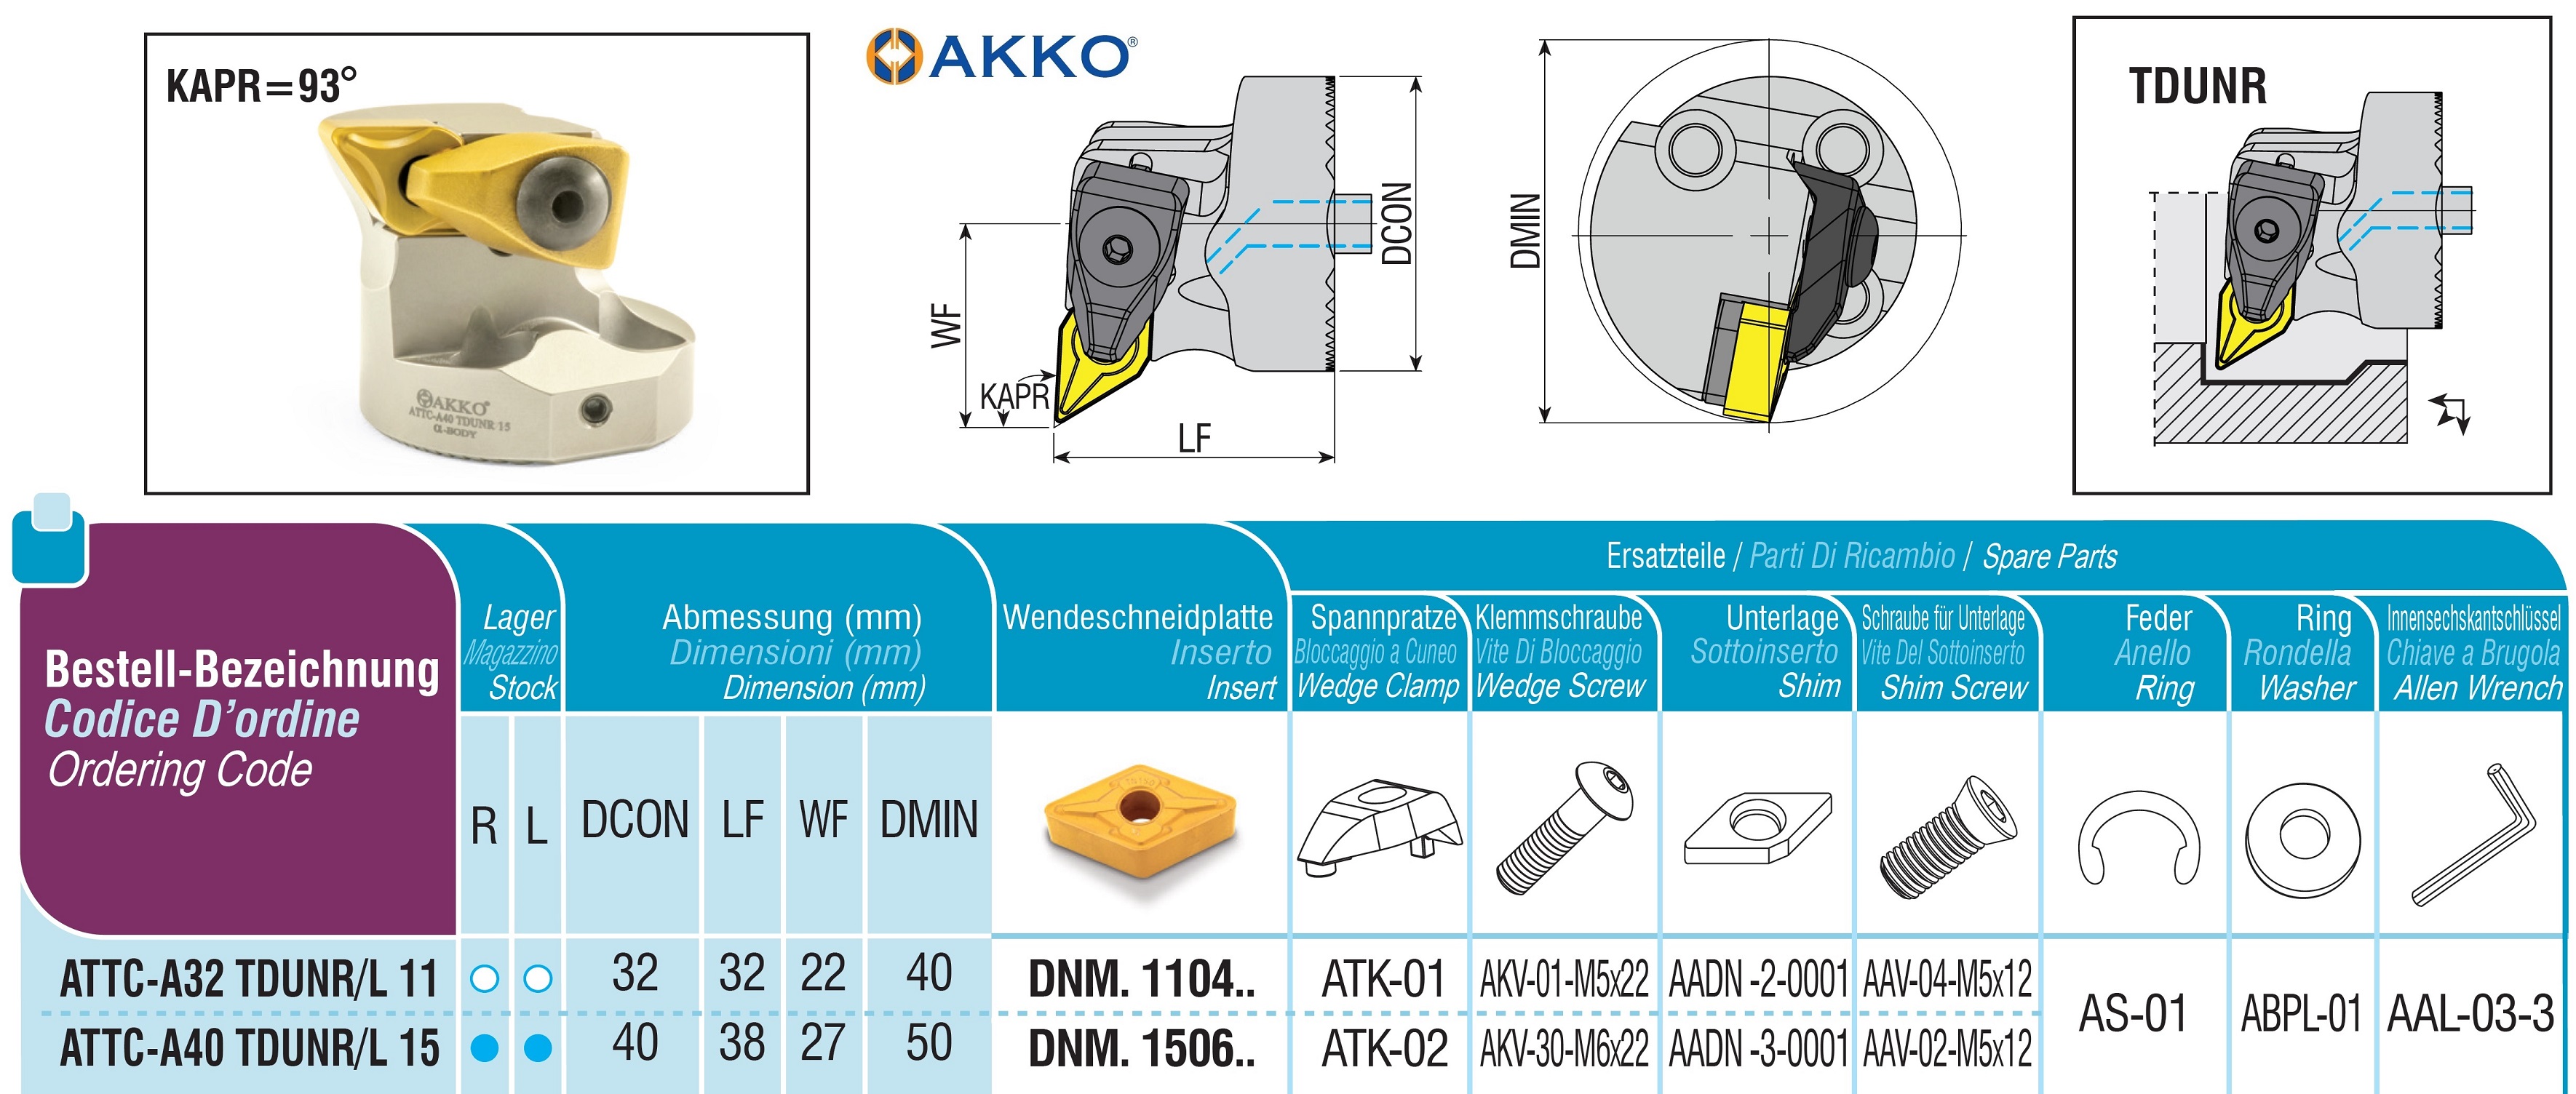 AKKO-Wechselkopf für schwingungsgedämpfte Bohrstange, ø = 32 mm, für Wendeplatte DNM. 1104.., mit Innenkühlung, für eine hohe Oberflächenqualität bei großer Auskraglänge, rechte Ausführung 